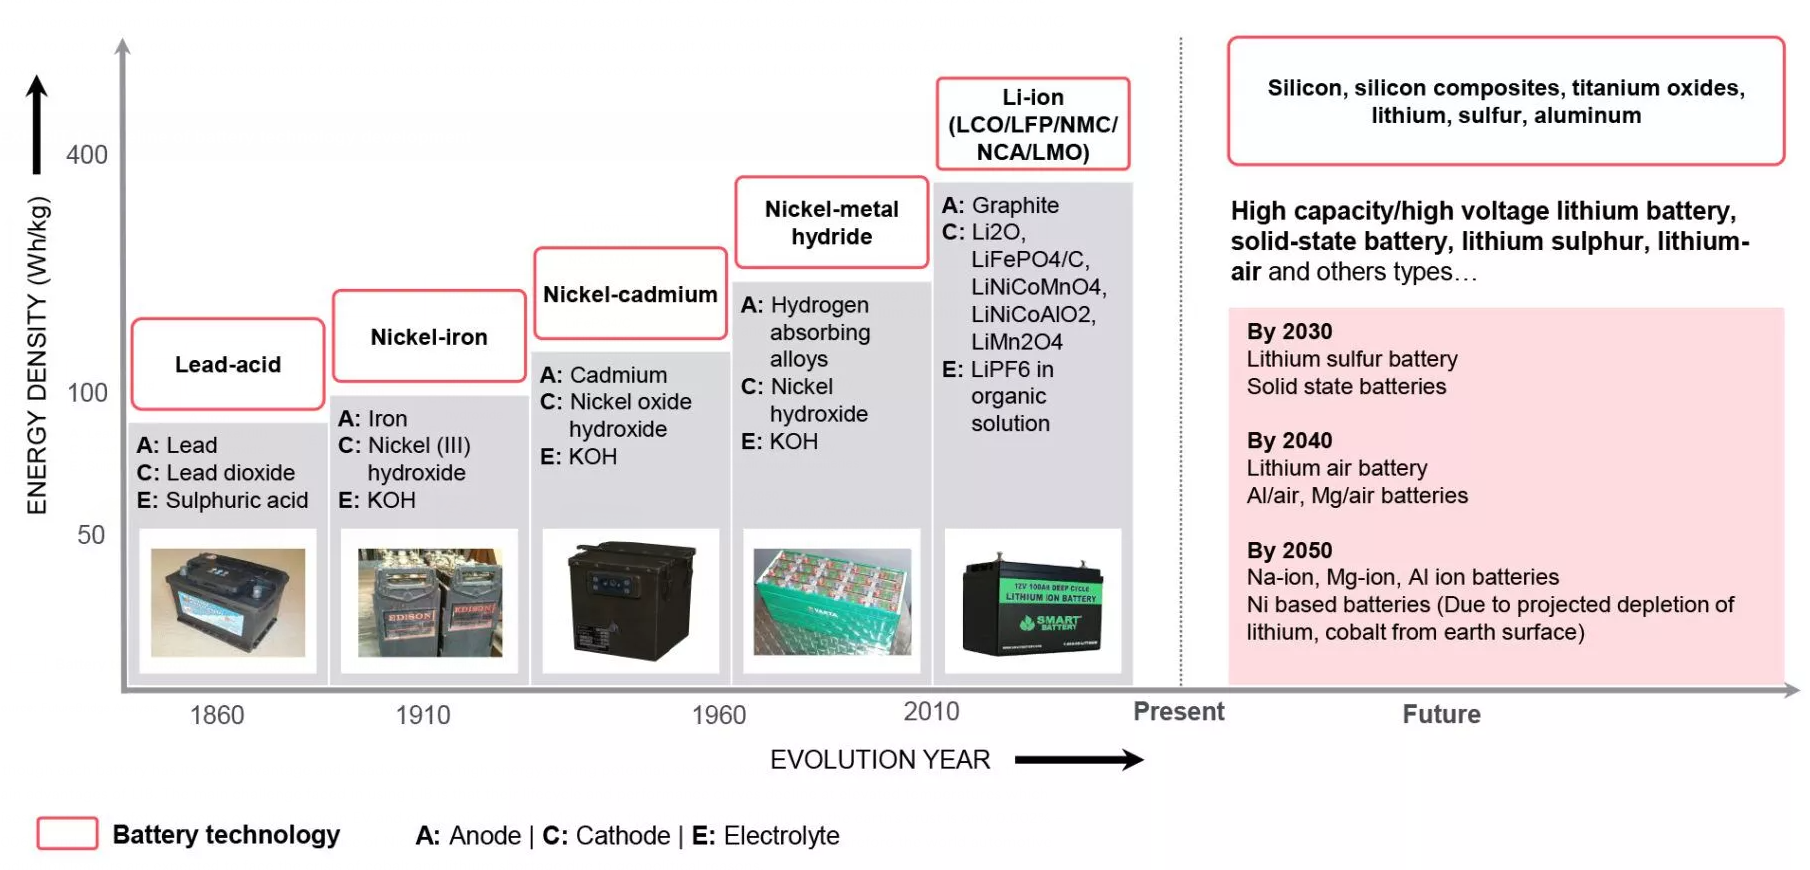 Timeline of battery technology development